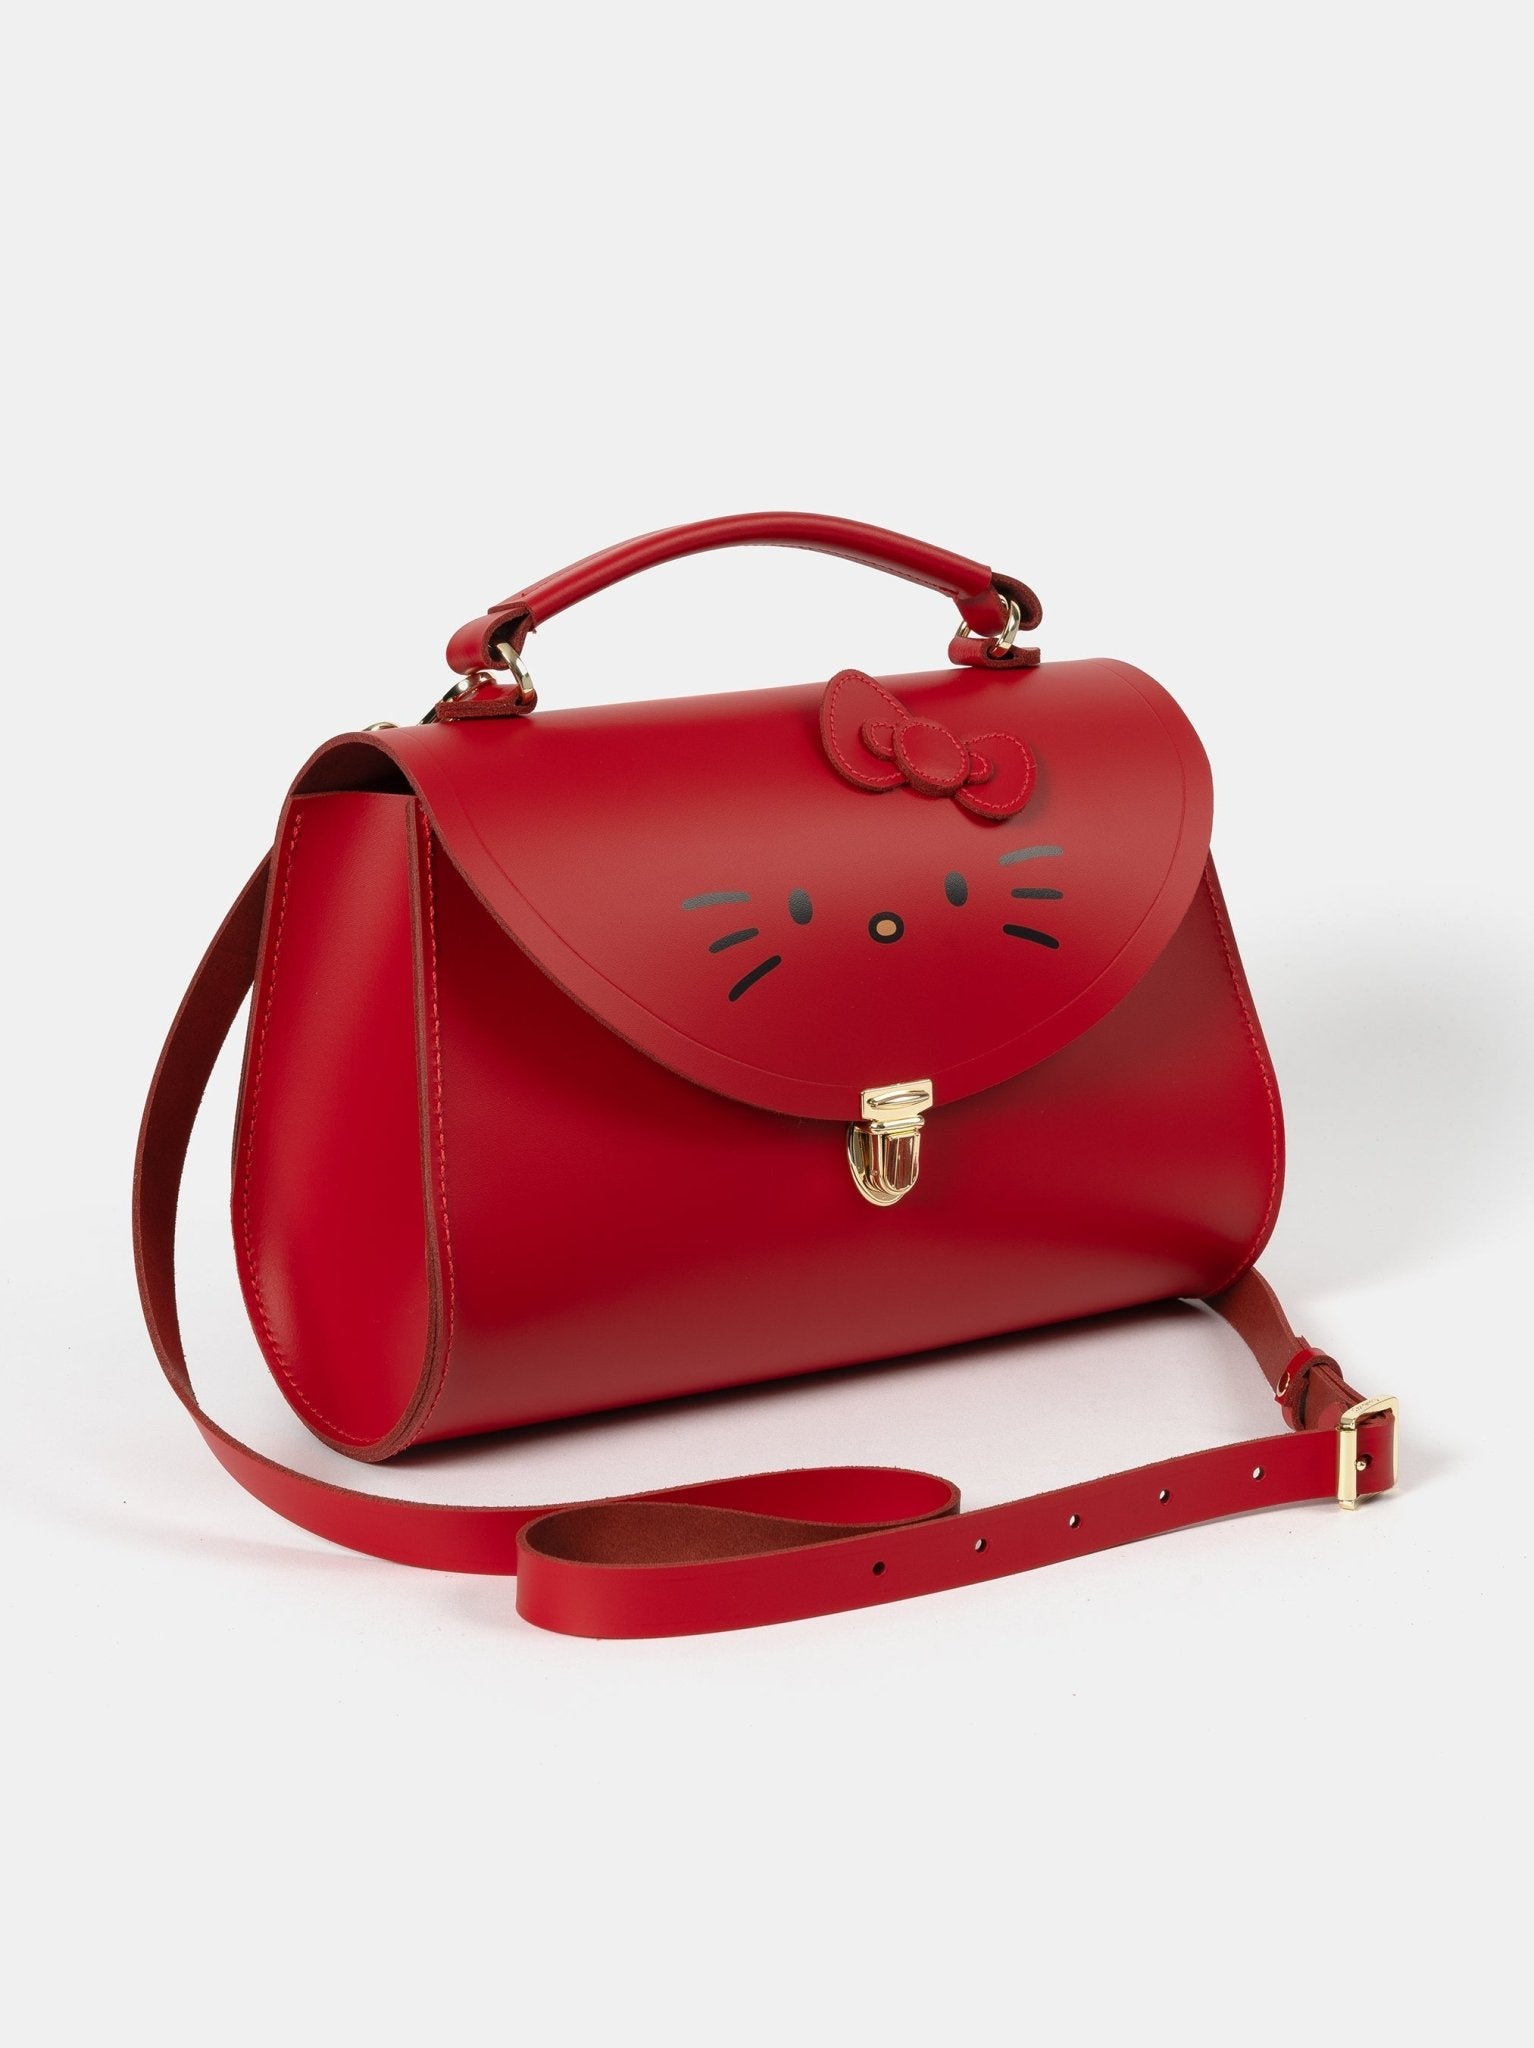 The Hello Kitty Poppy Bag - Red - The Cambridge Satchel Company EU Store